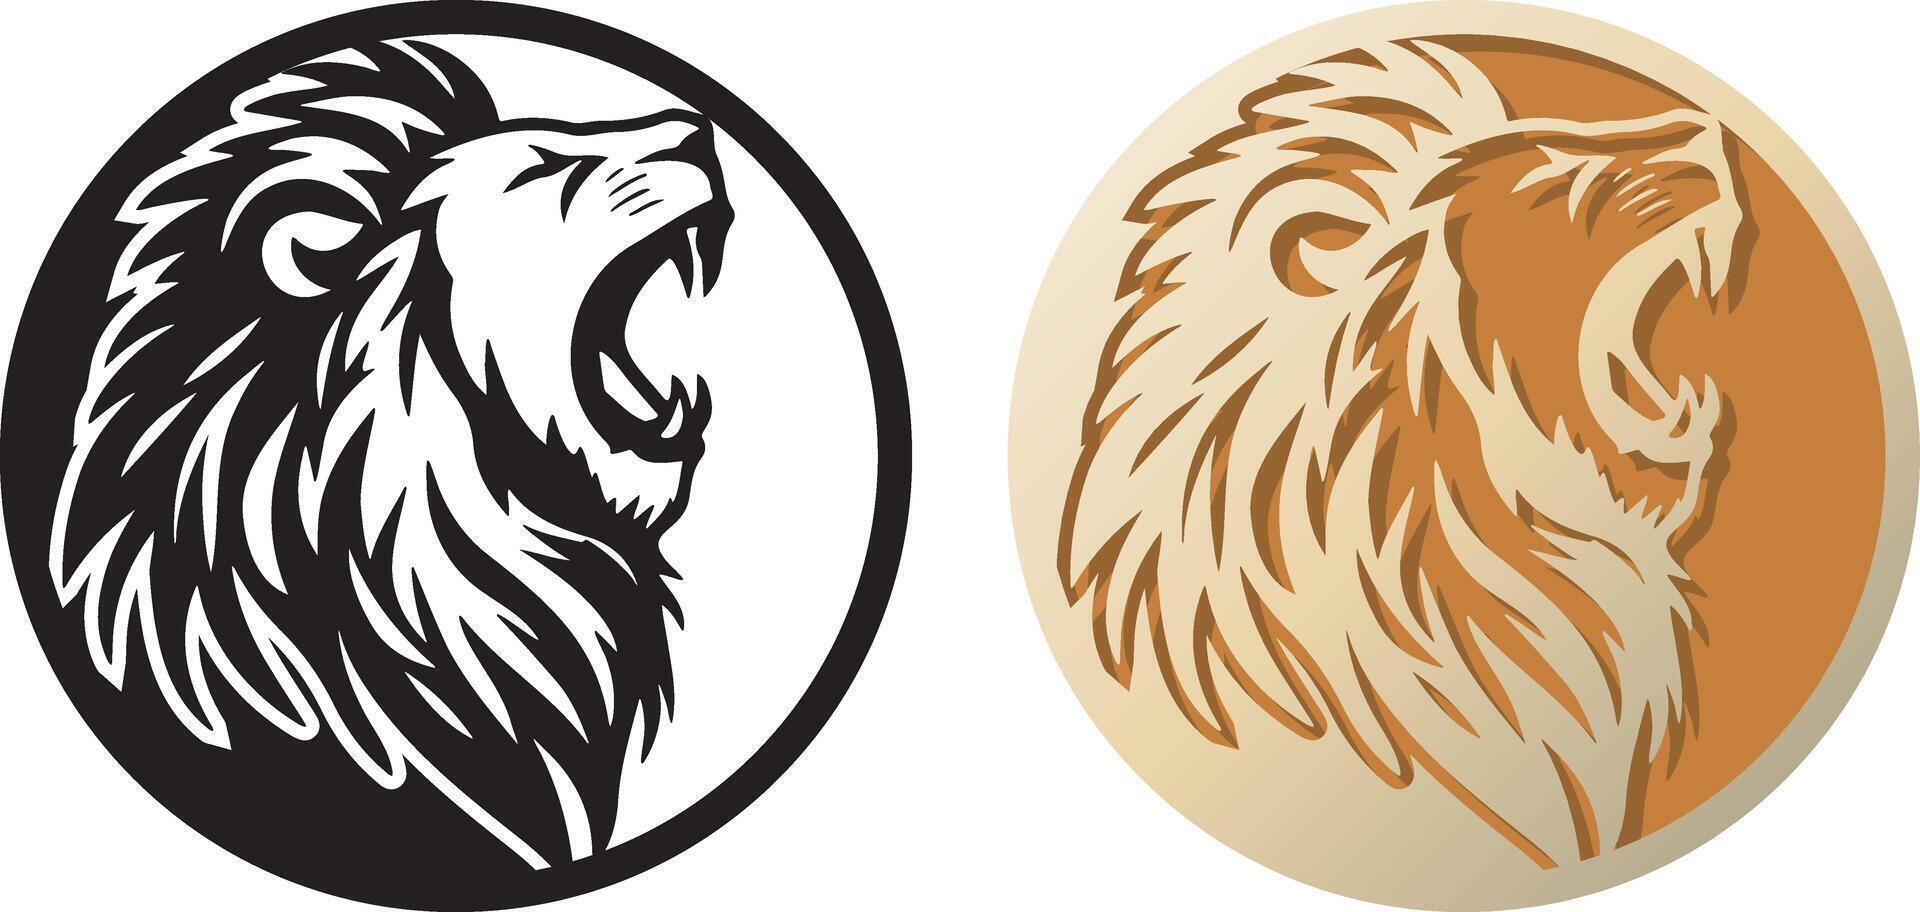 Lion logo illustration. vecteur